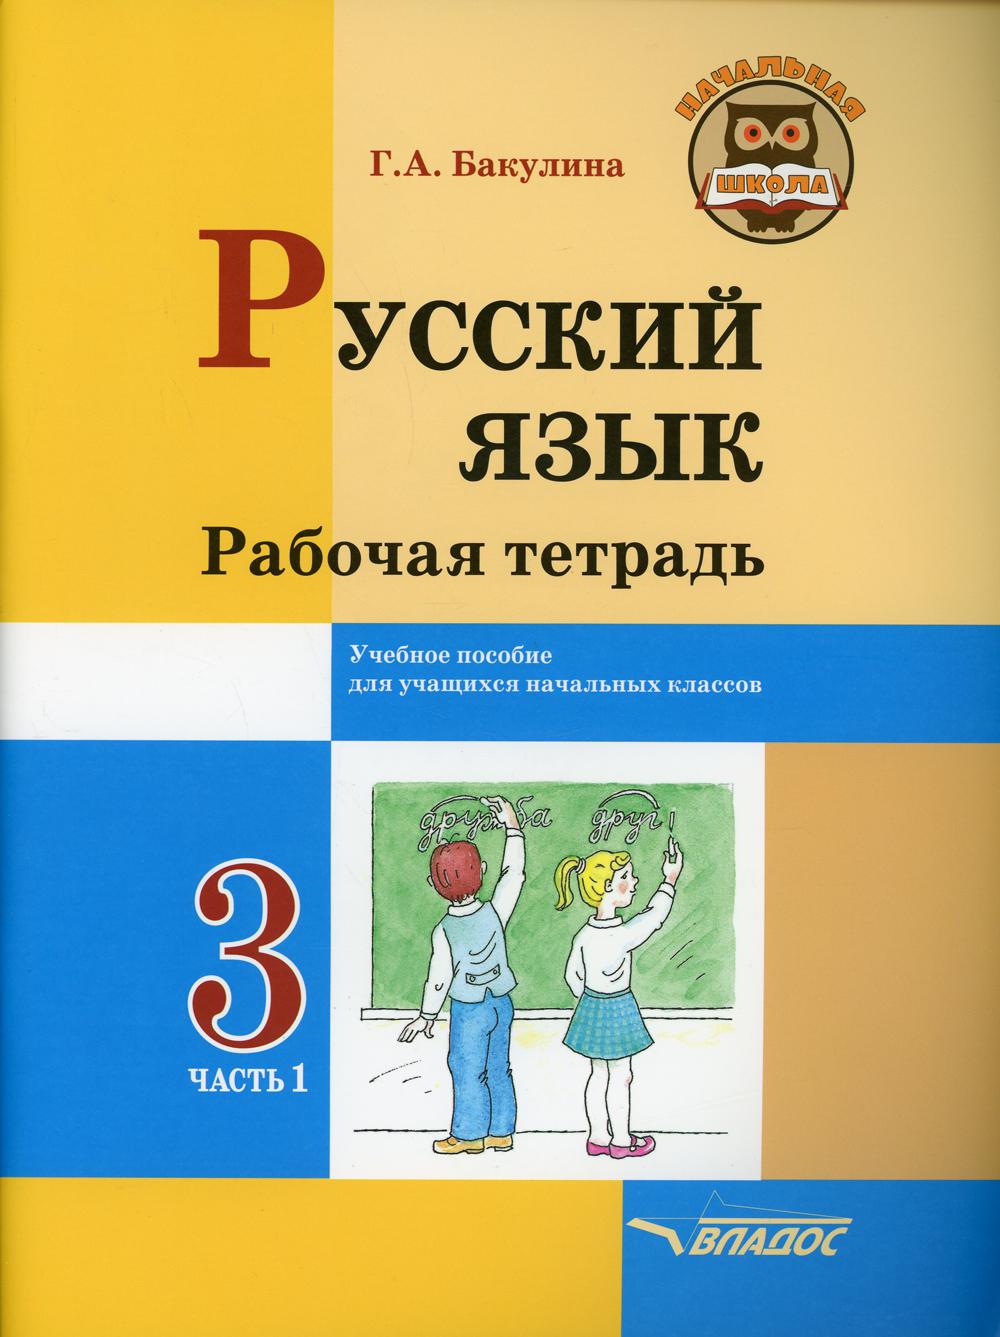 Тетрадь Русский язык. Рабочая тетрадь. 3 класс В 2 ч. Ч. 1